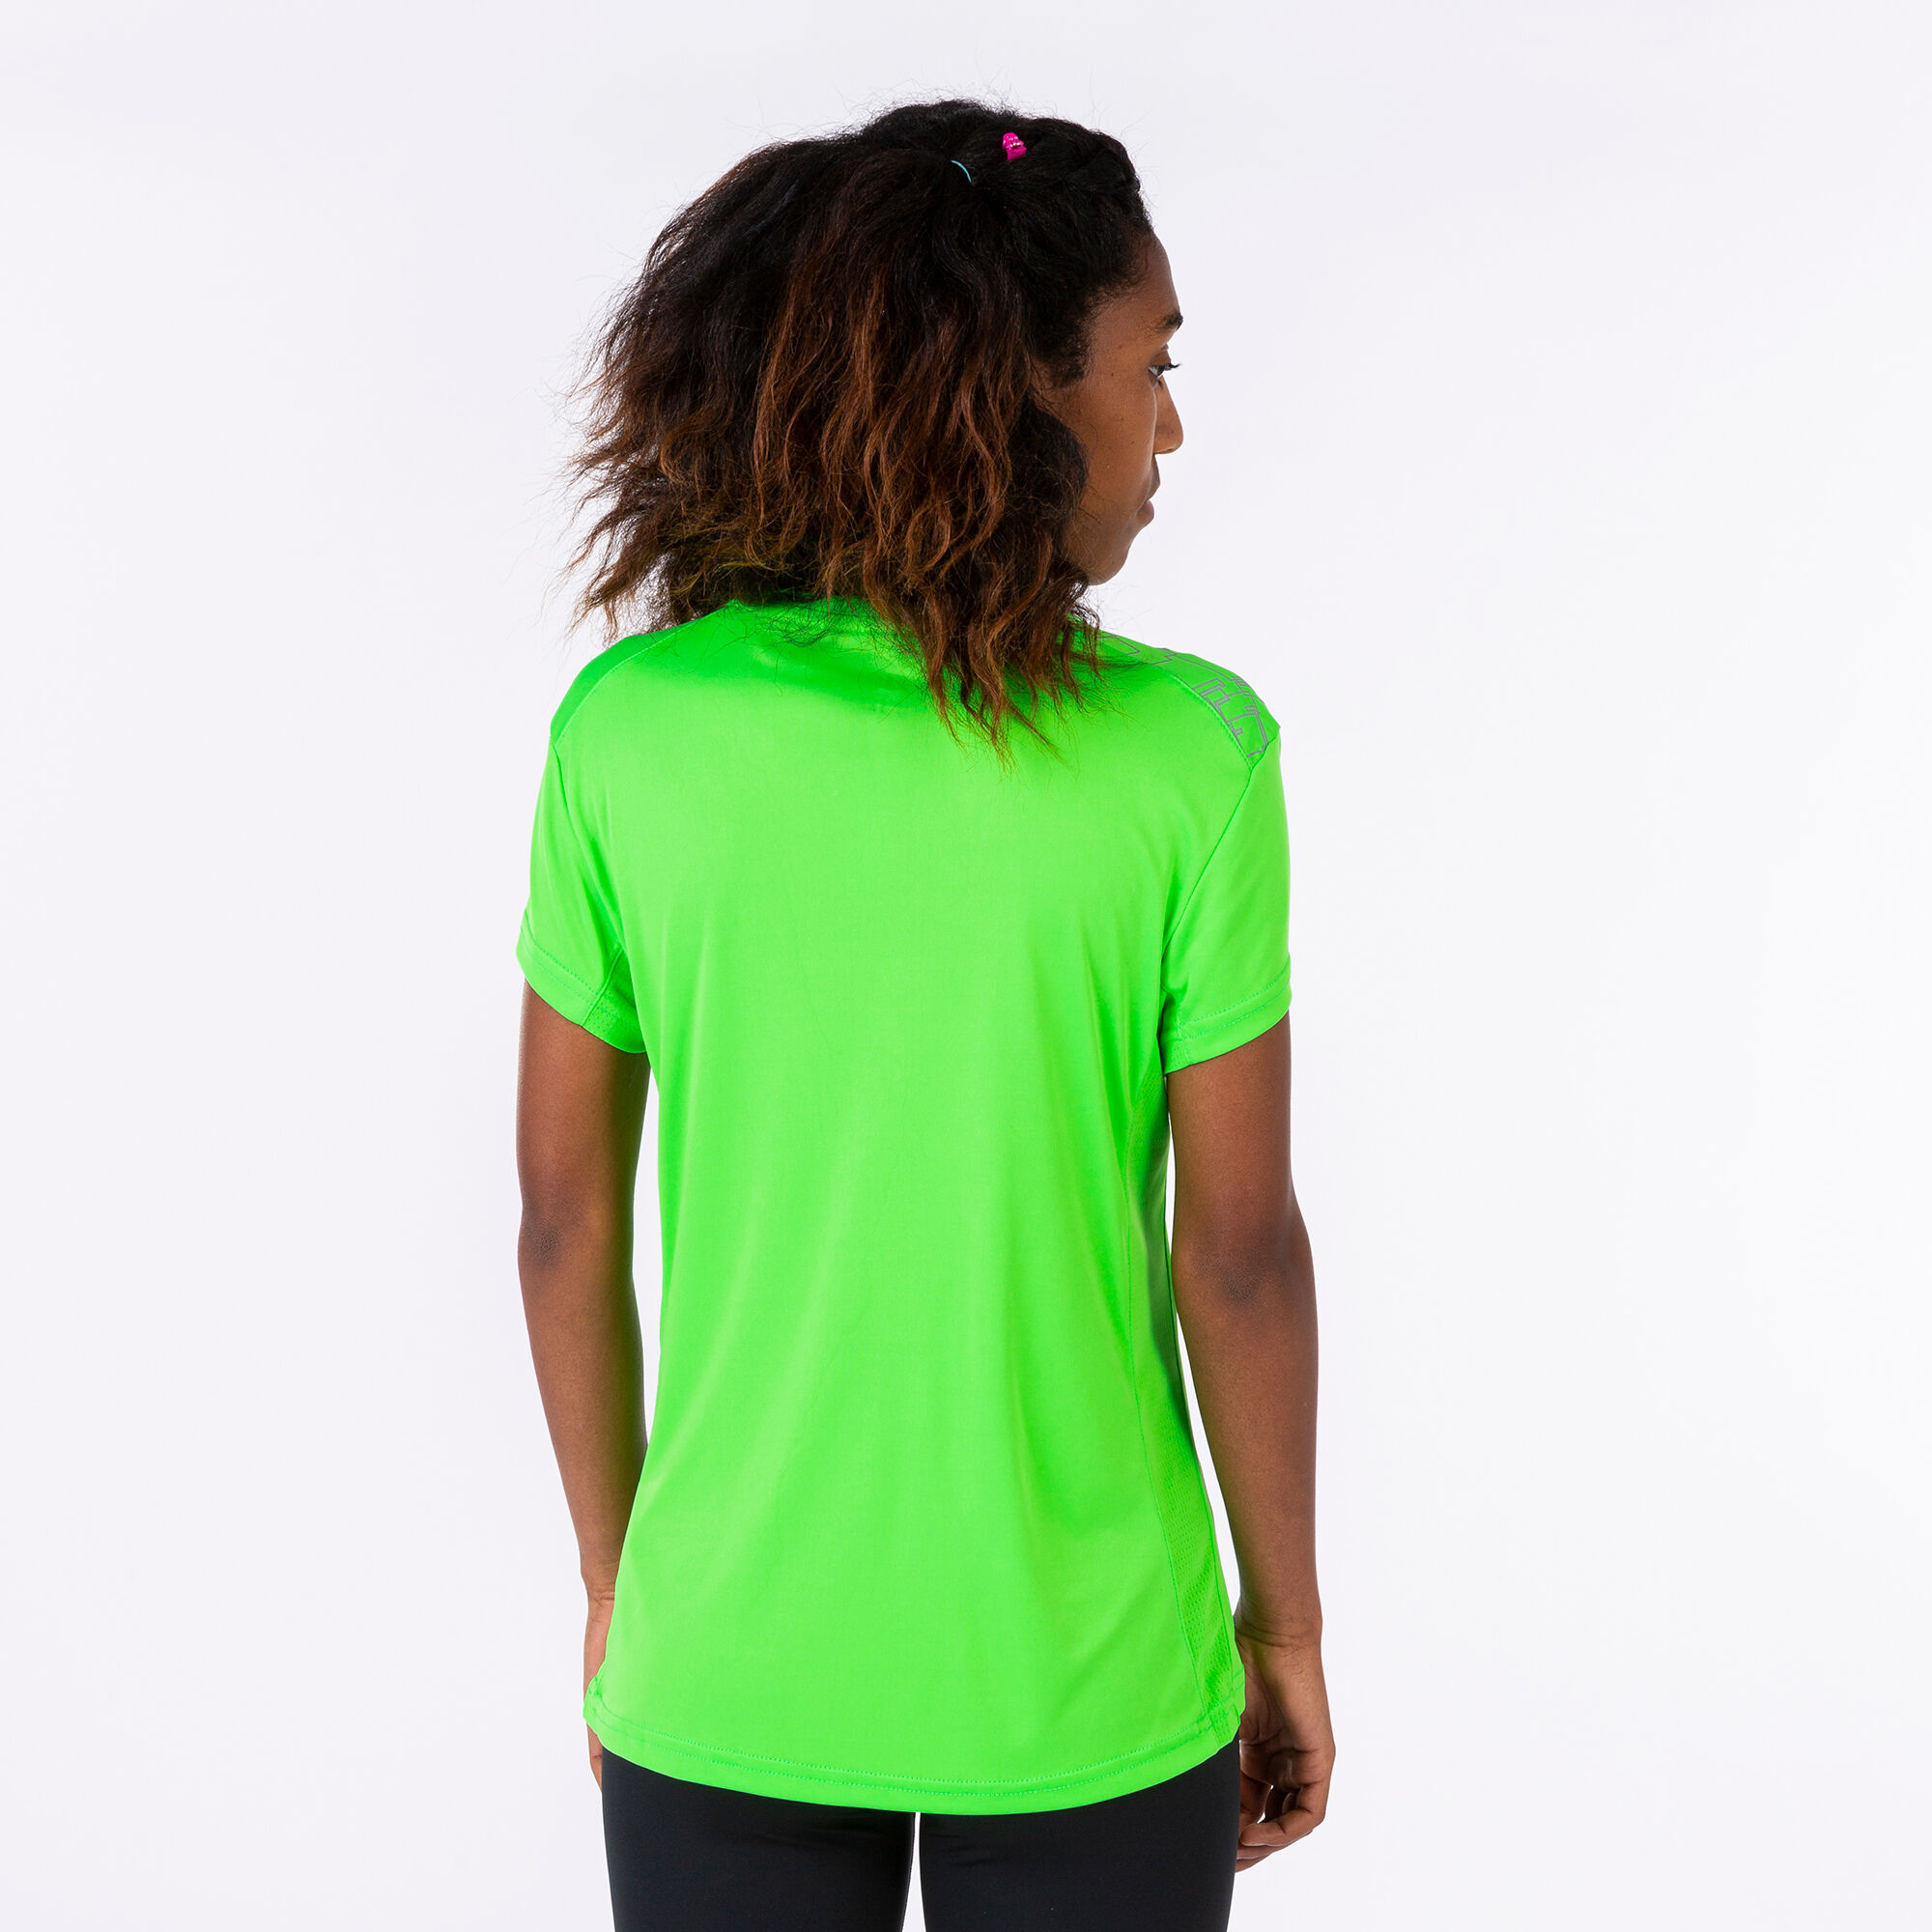 Camiseta mujer Elite verde flúor | JOMA®